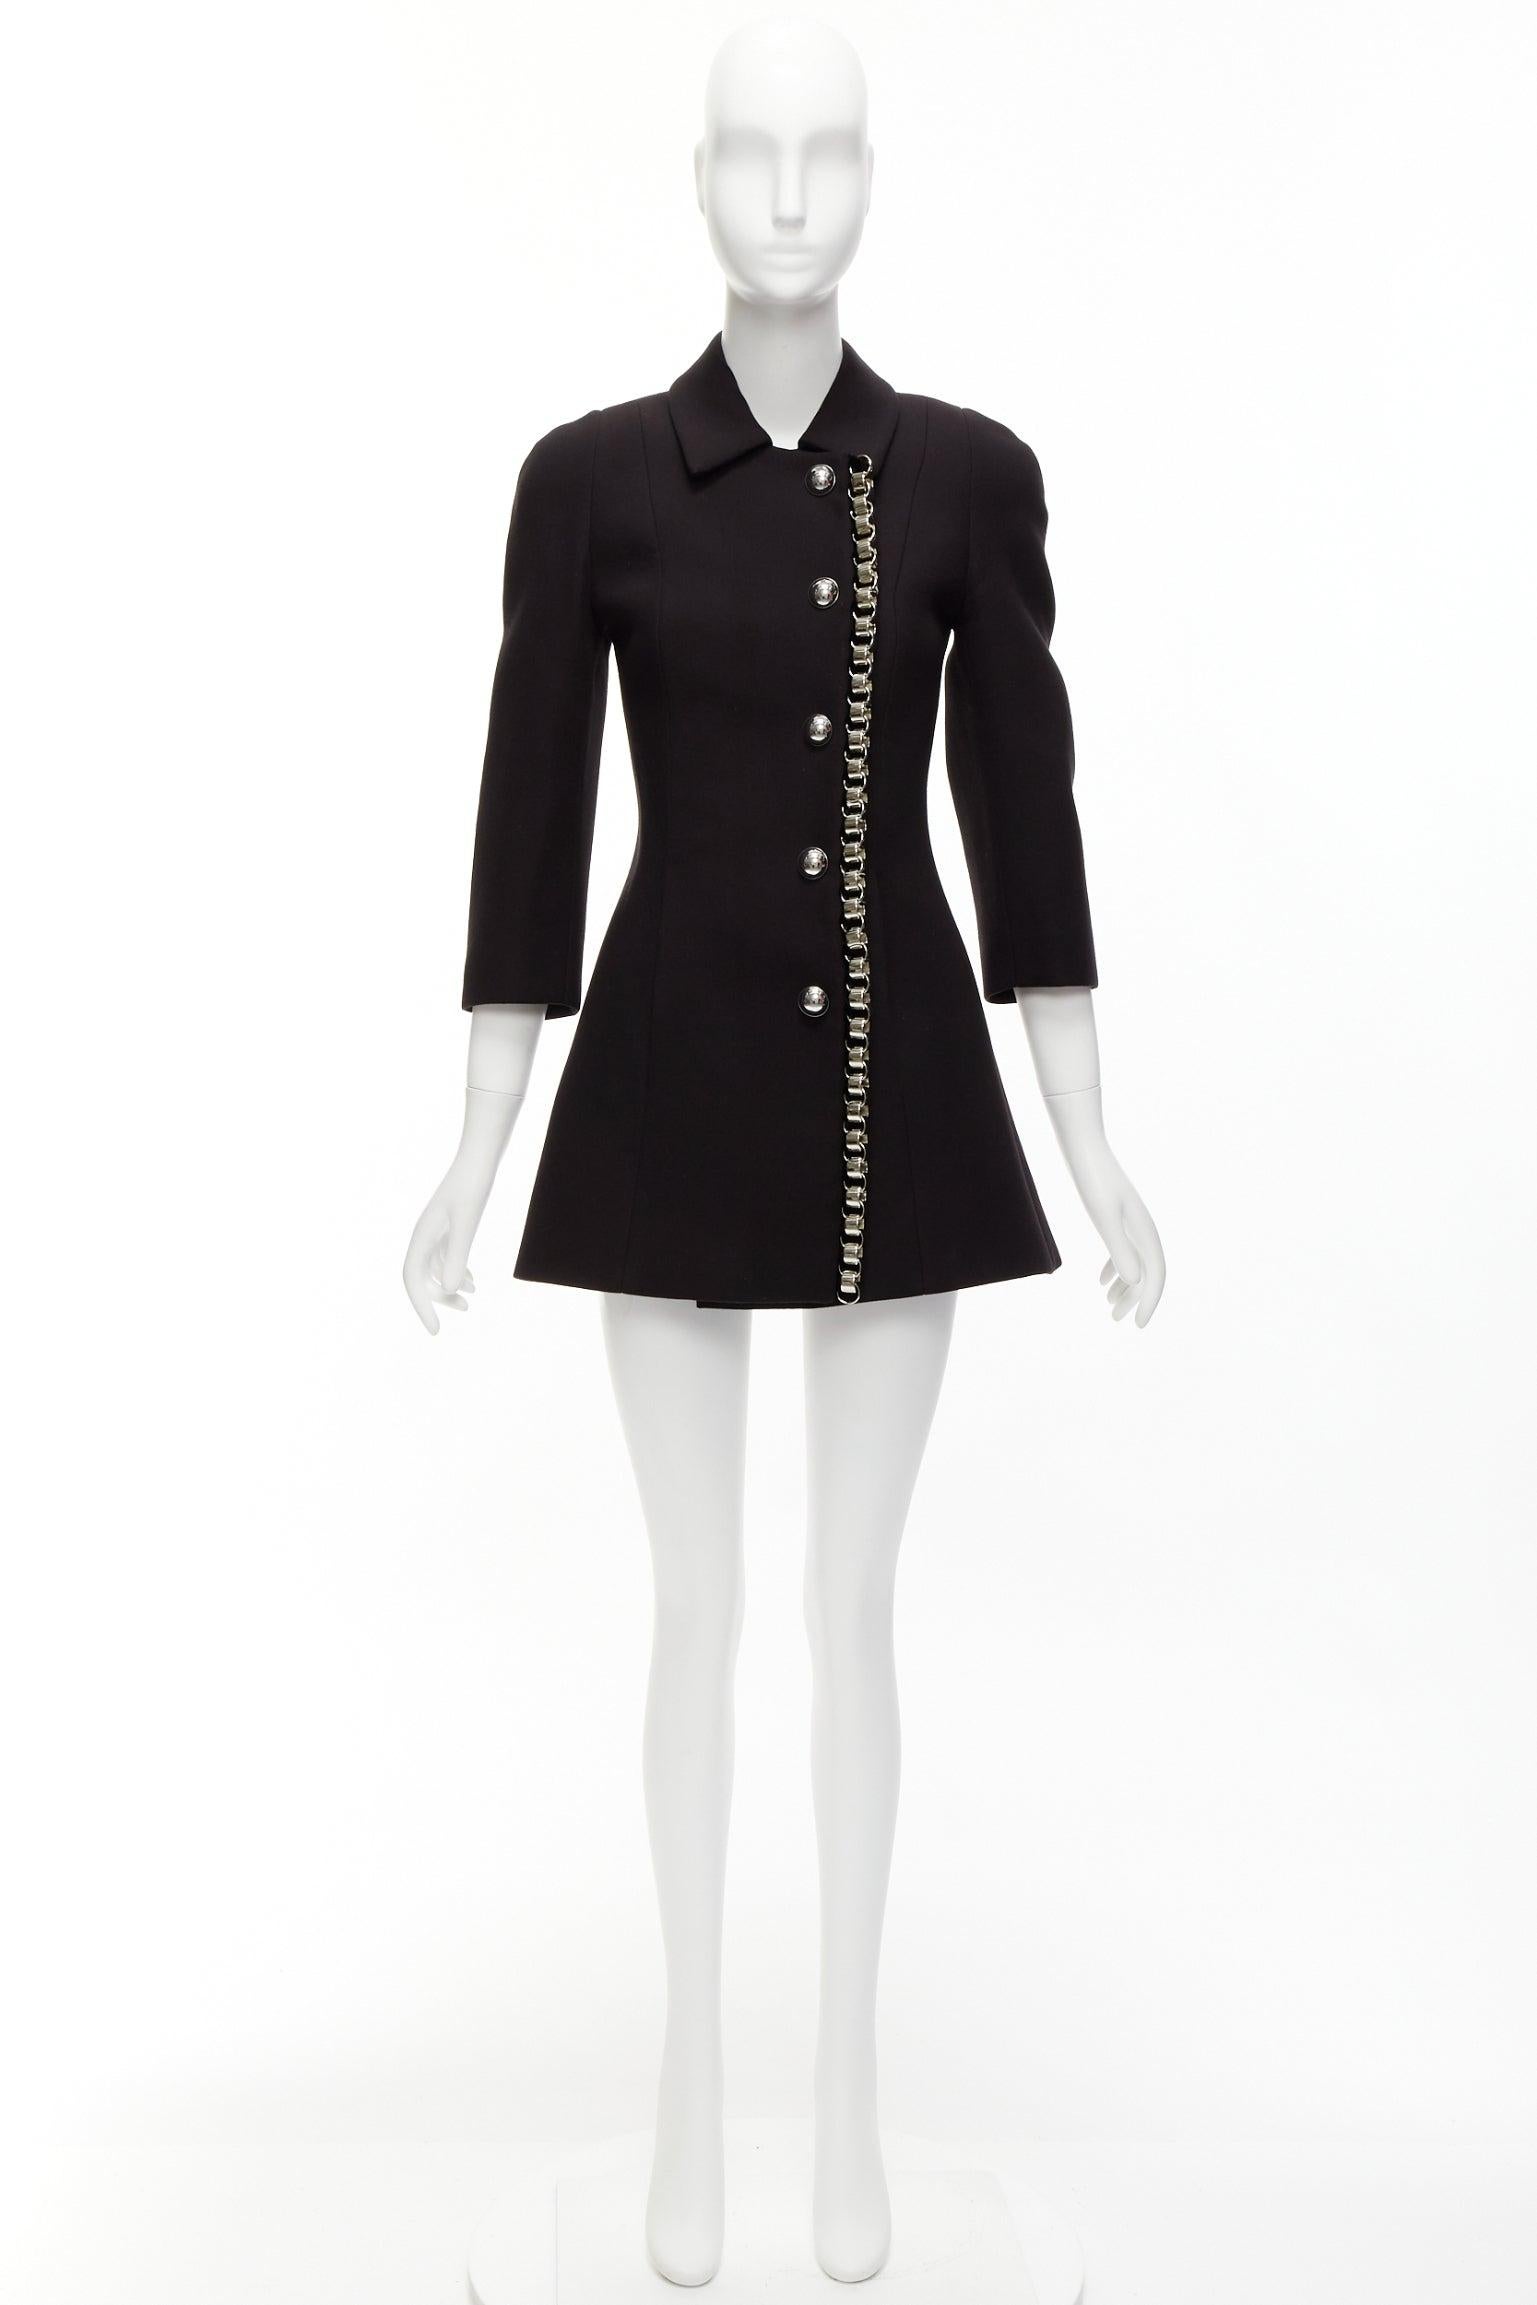 DAVID KOMA Runway Cady, robe manteau ajustée noire avec bordure en chaîne, taille UK 6 XS en vente 6